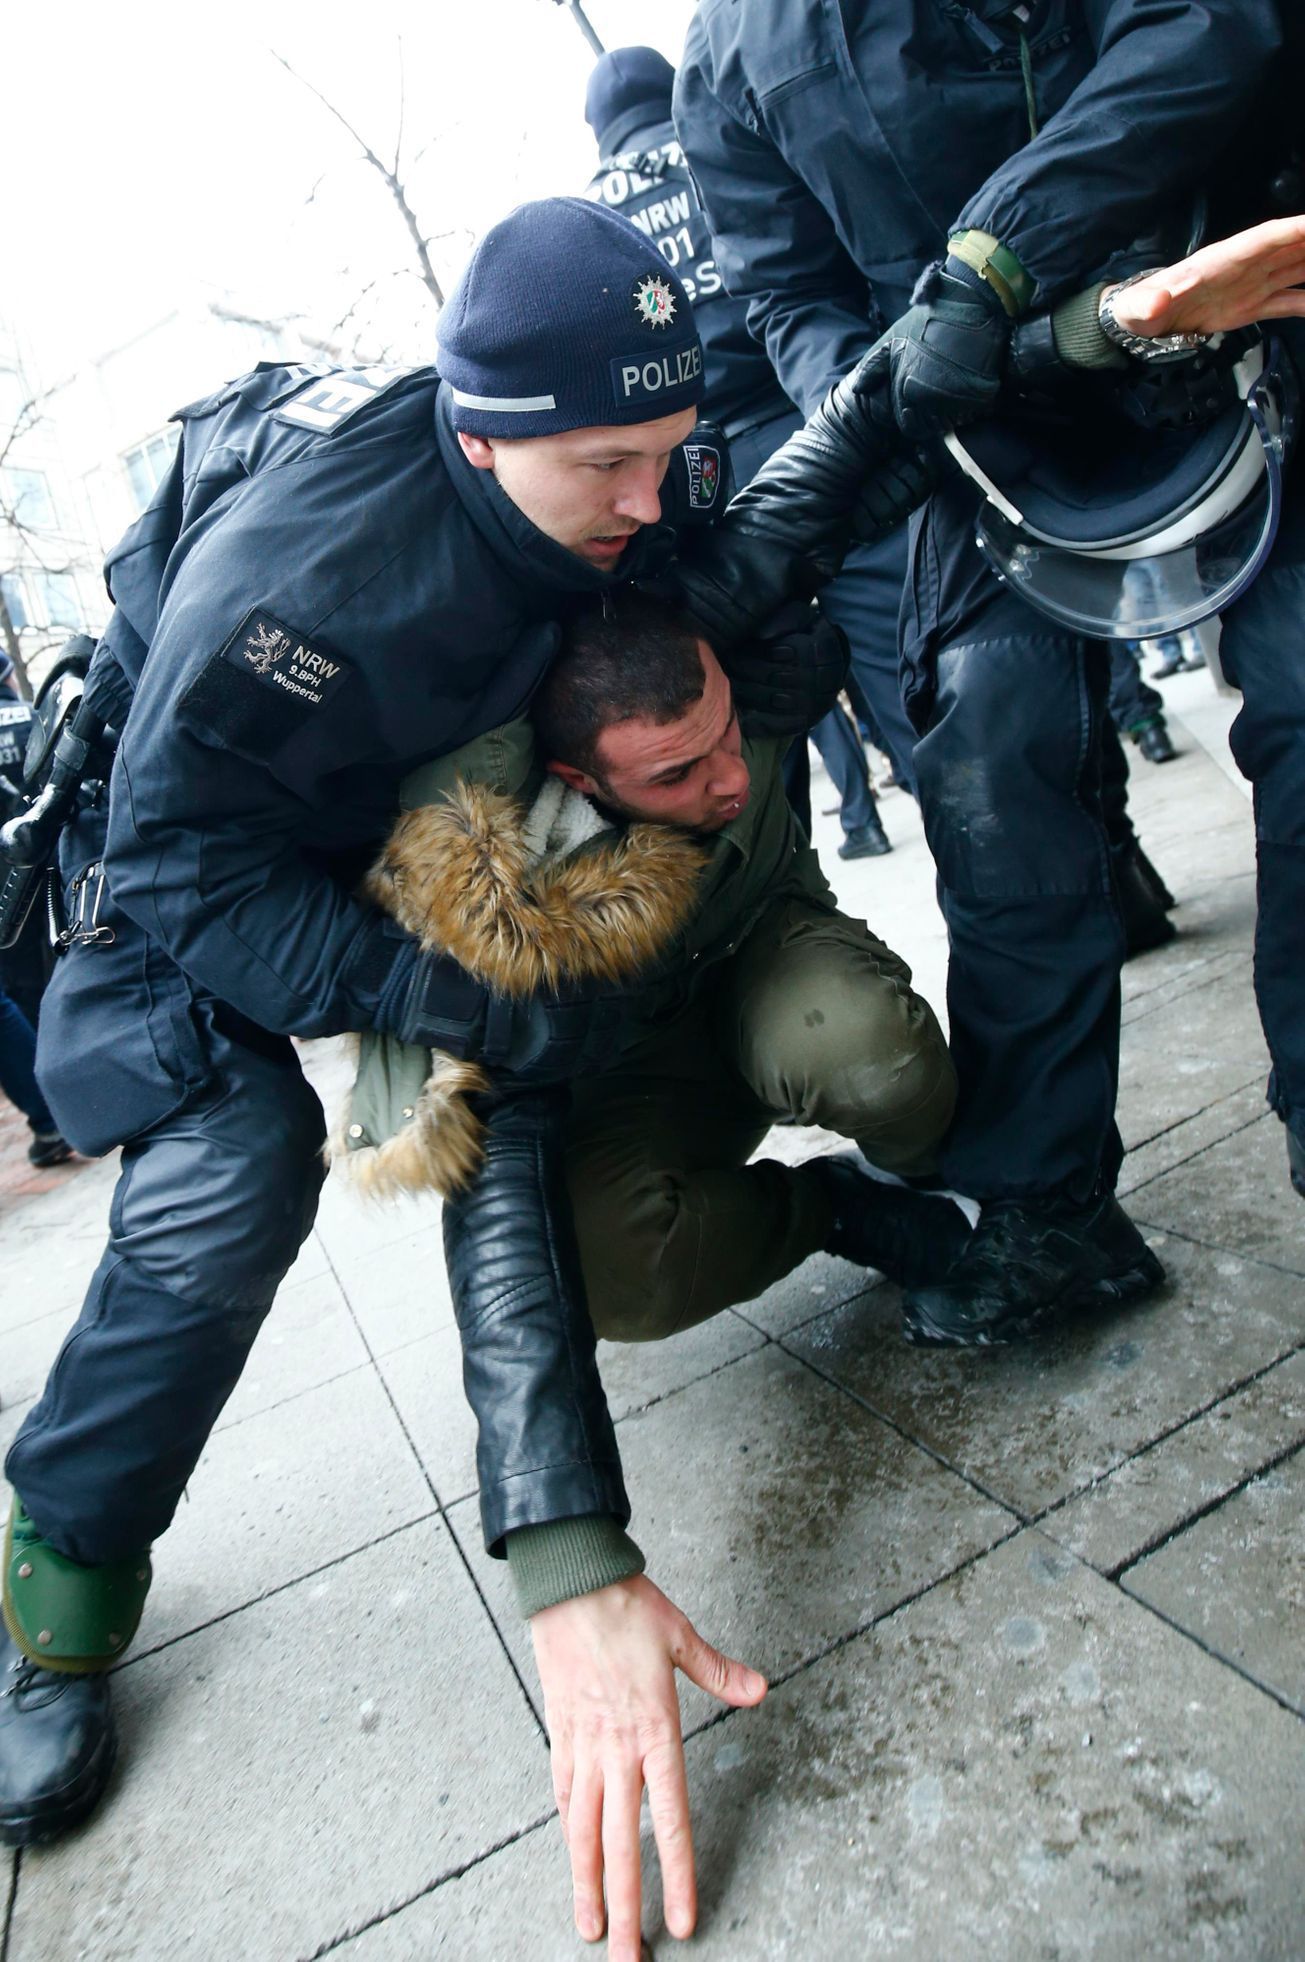 Německý policista zasahuje proti kurdskému demonstrantovi v Hannoveru.